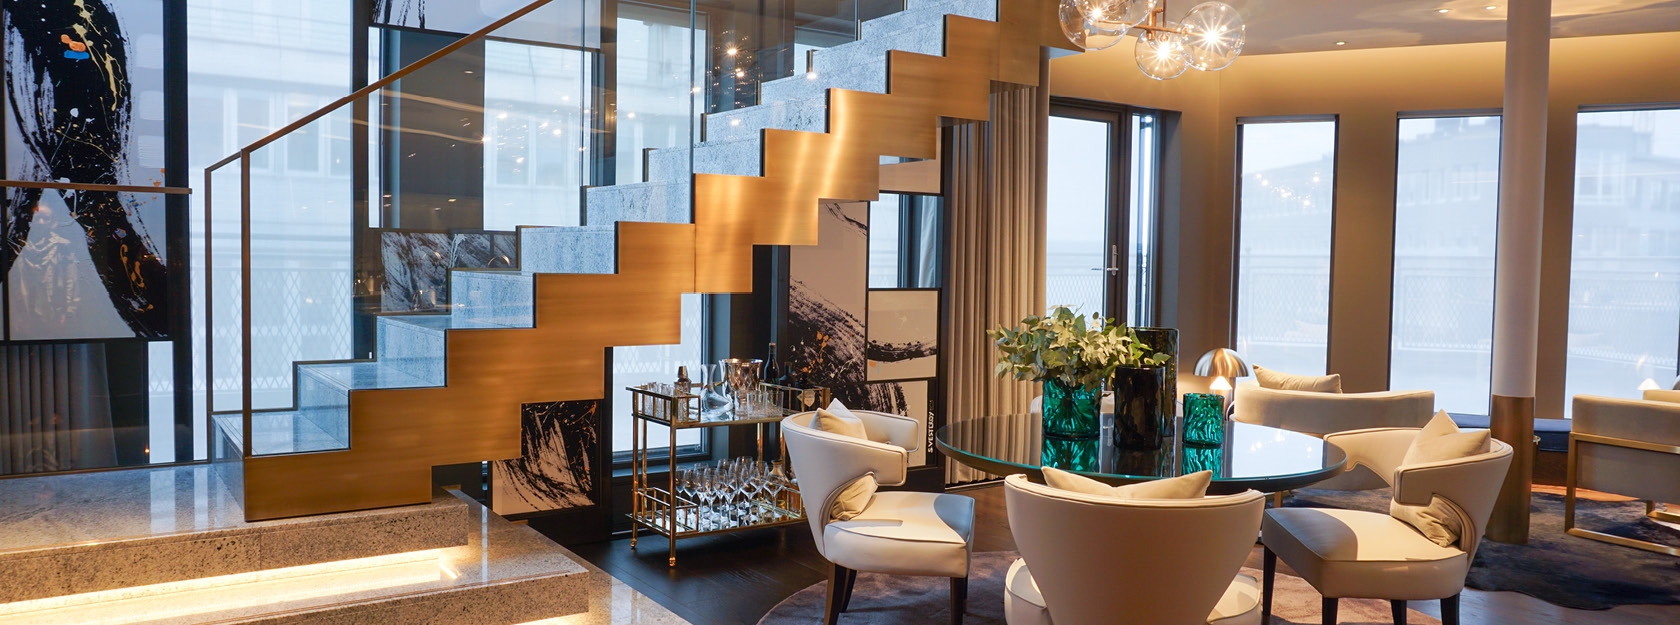 Luksuriøse rom og suiter hos Hotel Continental i Oslo